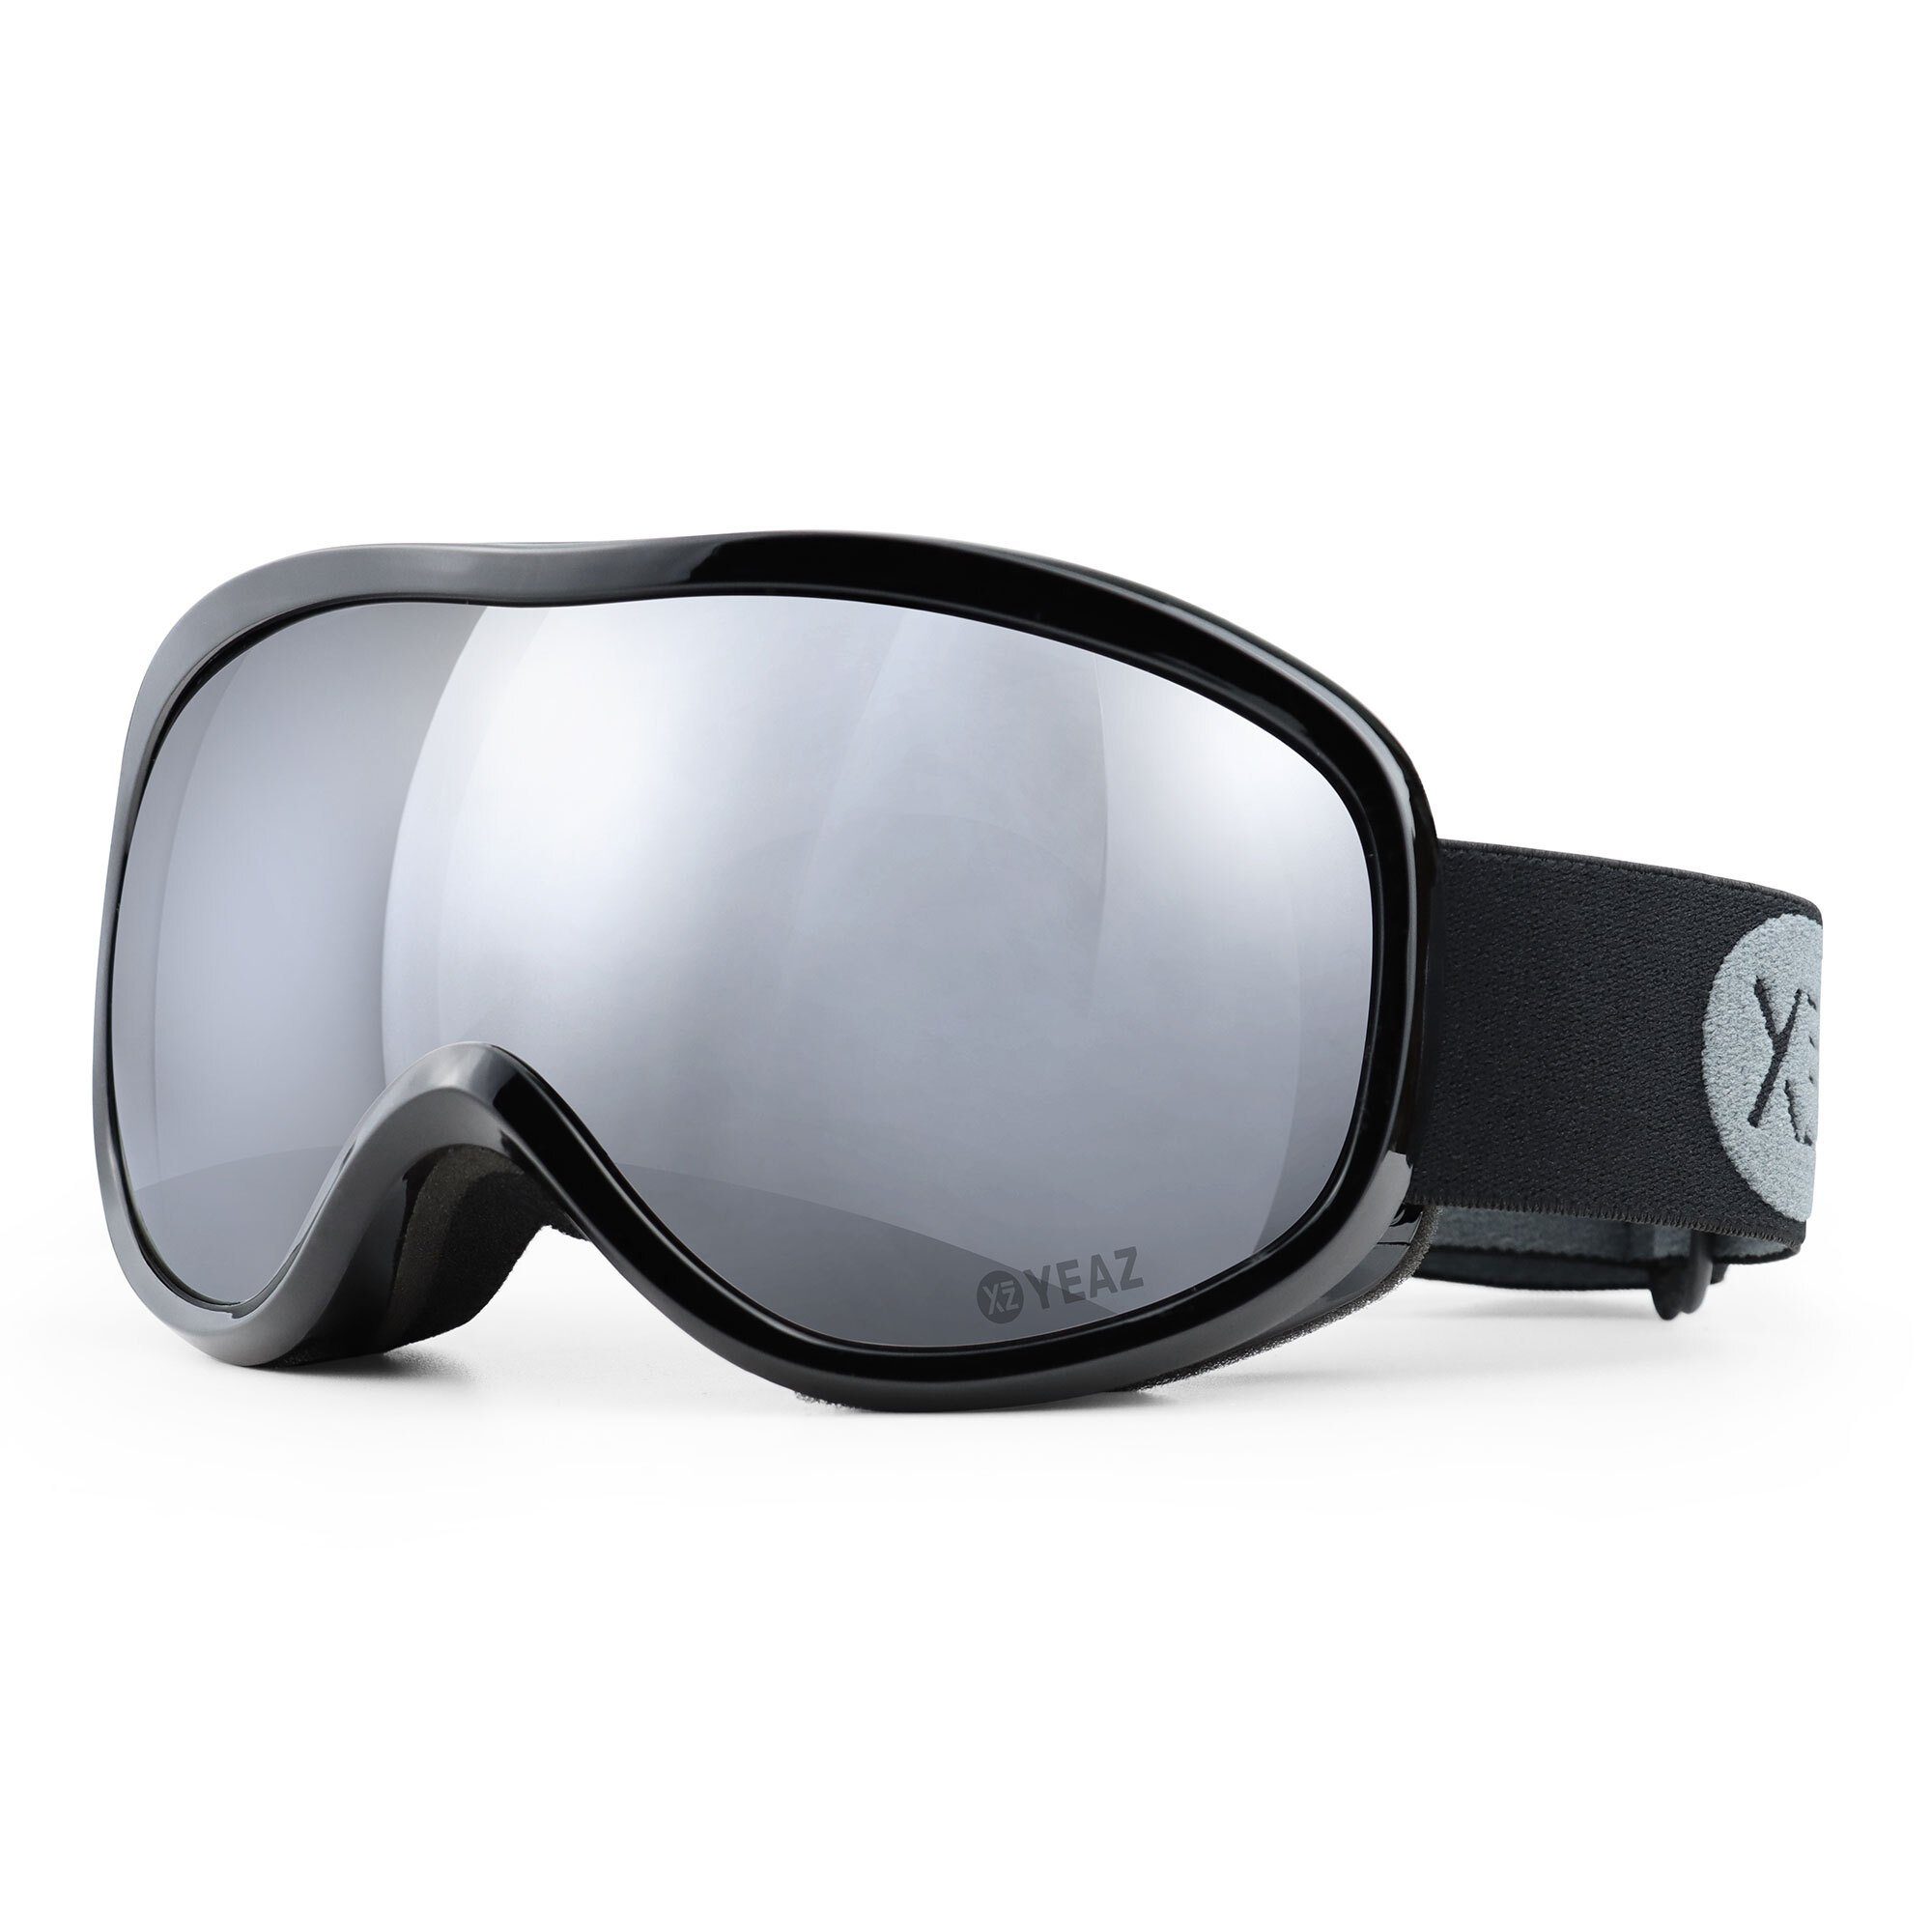 YEAZ Skibrille STEEZE ski- und snowboard-brille silber/schwarz,  Premium-Ski- und Snowboardbrille für Erwachsene und Jugendliche